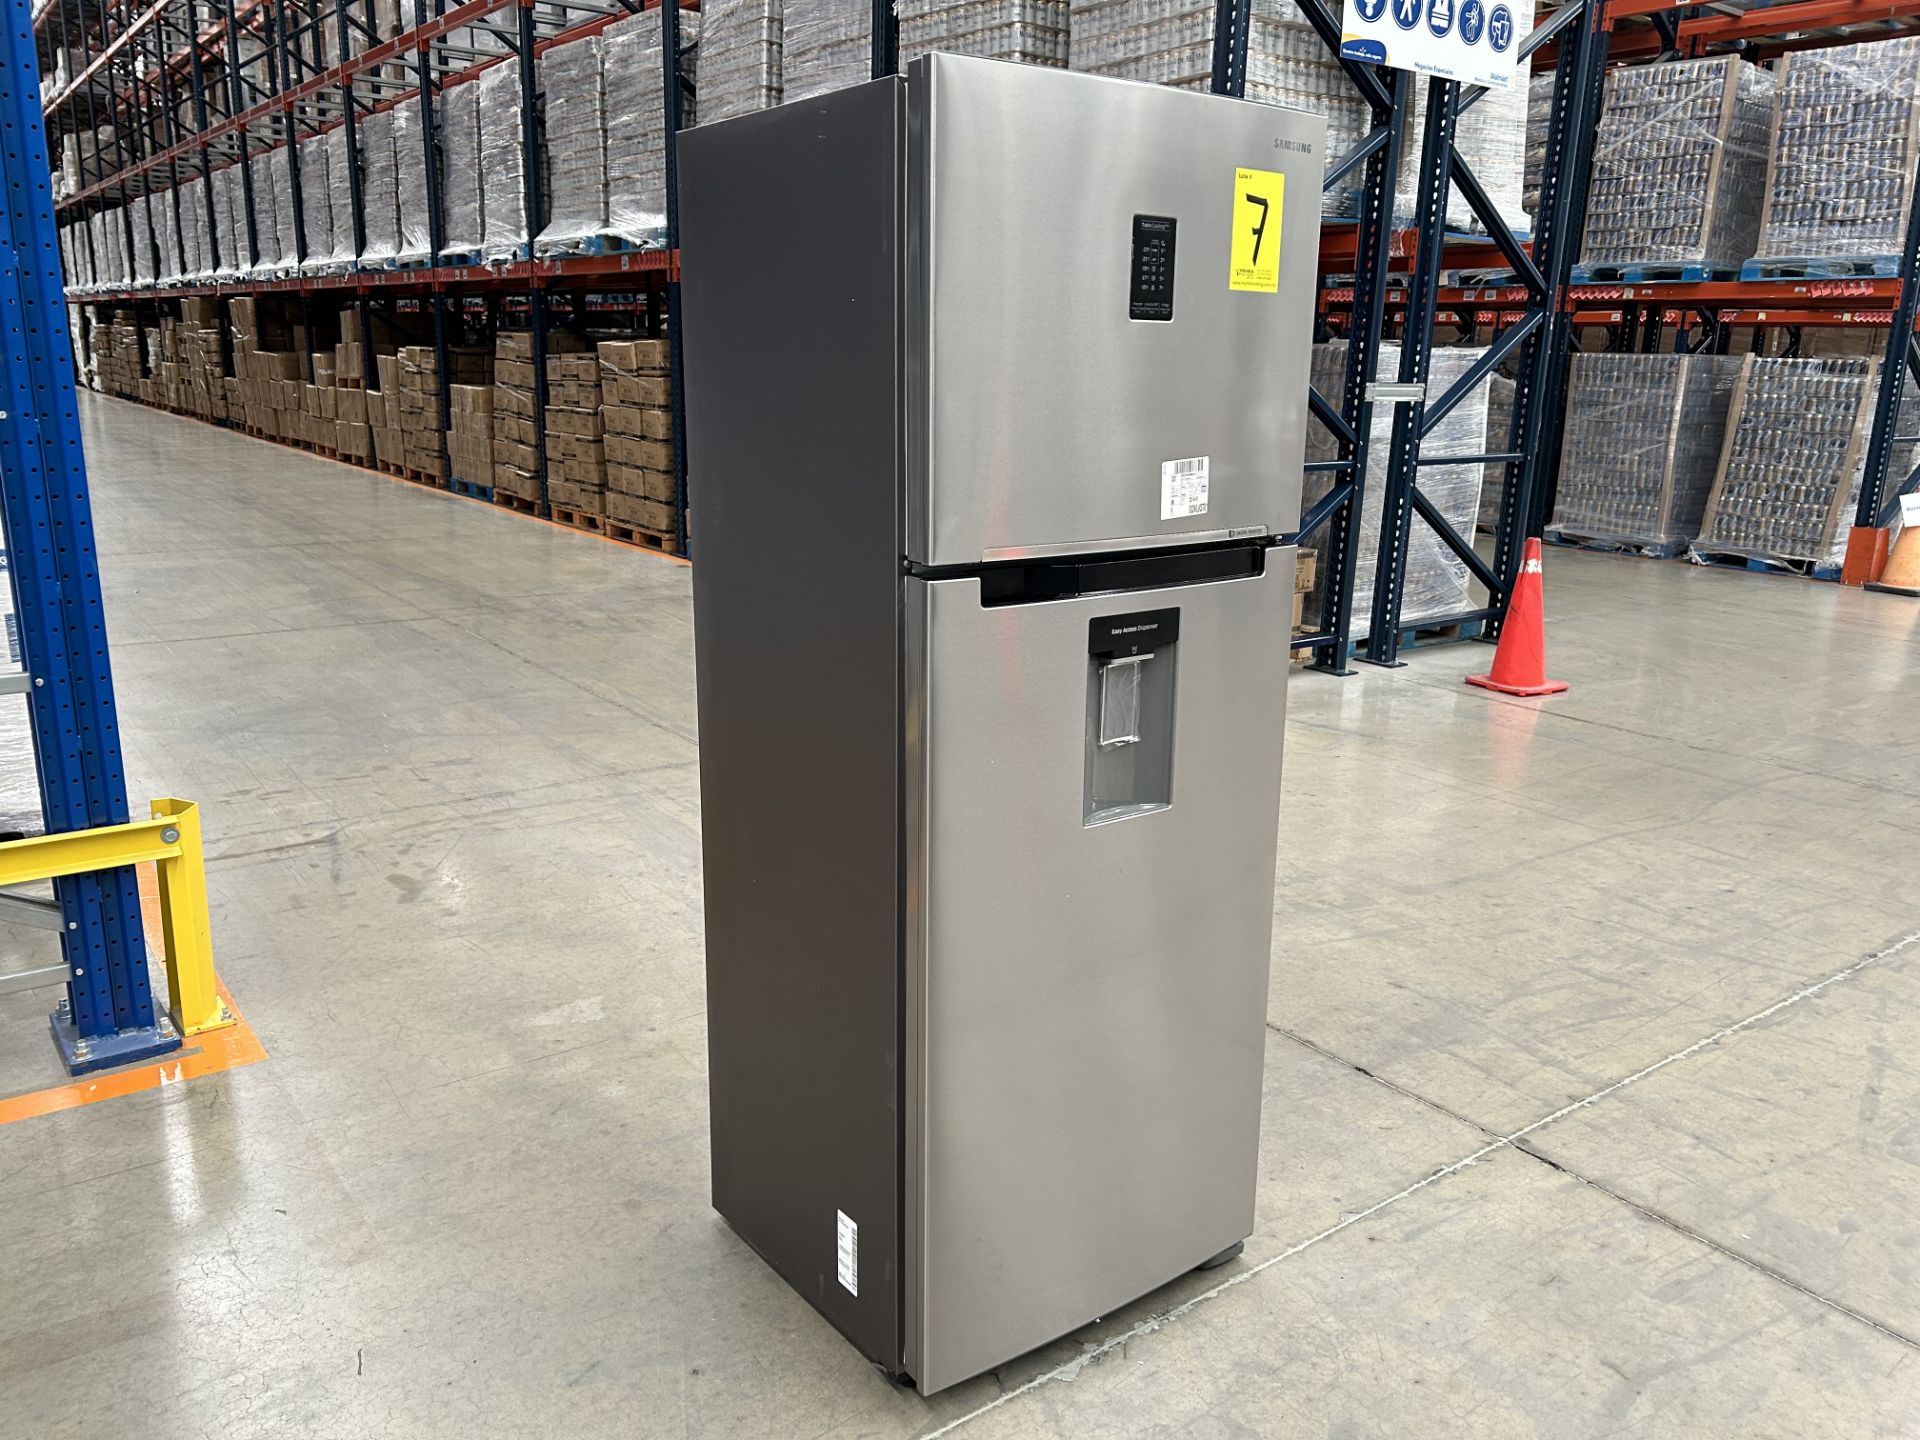 (NUEVO) Lote de 1 Refrigerador con dispensador de agua Marca SAMSUNG, Modelo RT38A5982SL, Serie 084 - Image 2 of 5